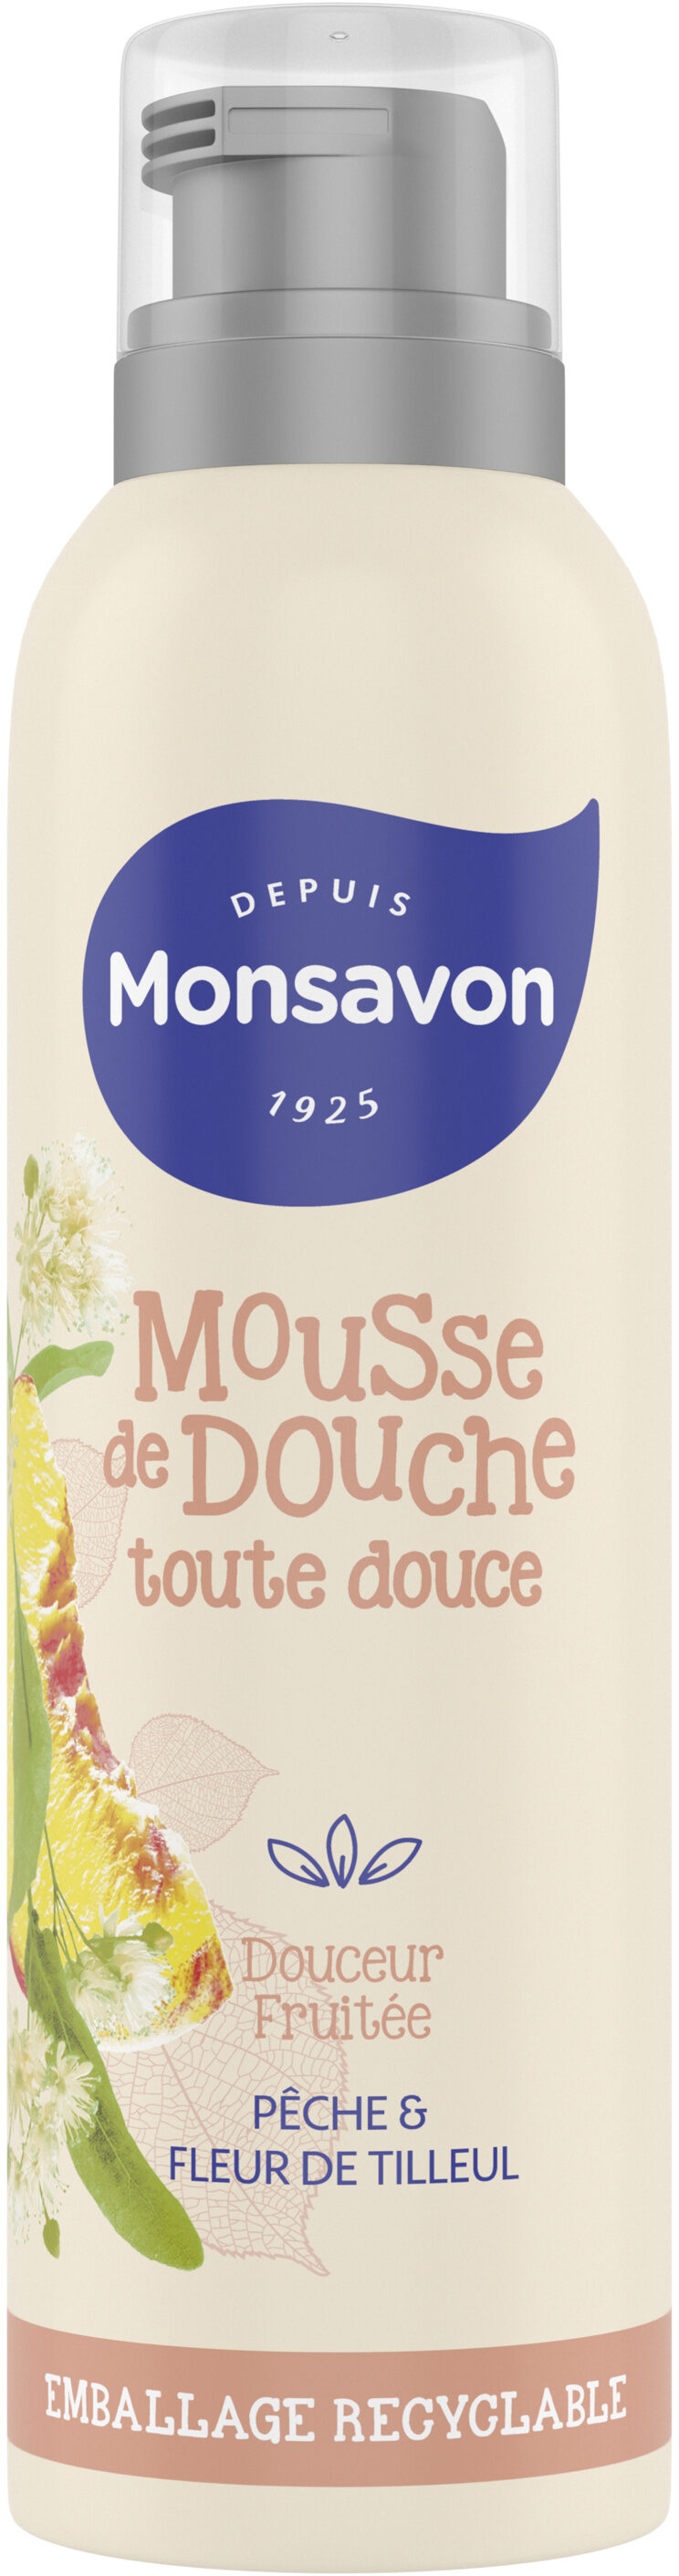 Monsavon Gel Douche Mousse Douceur Fruitée Pêche & Tilleul - Produto - fr